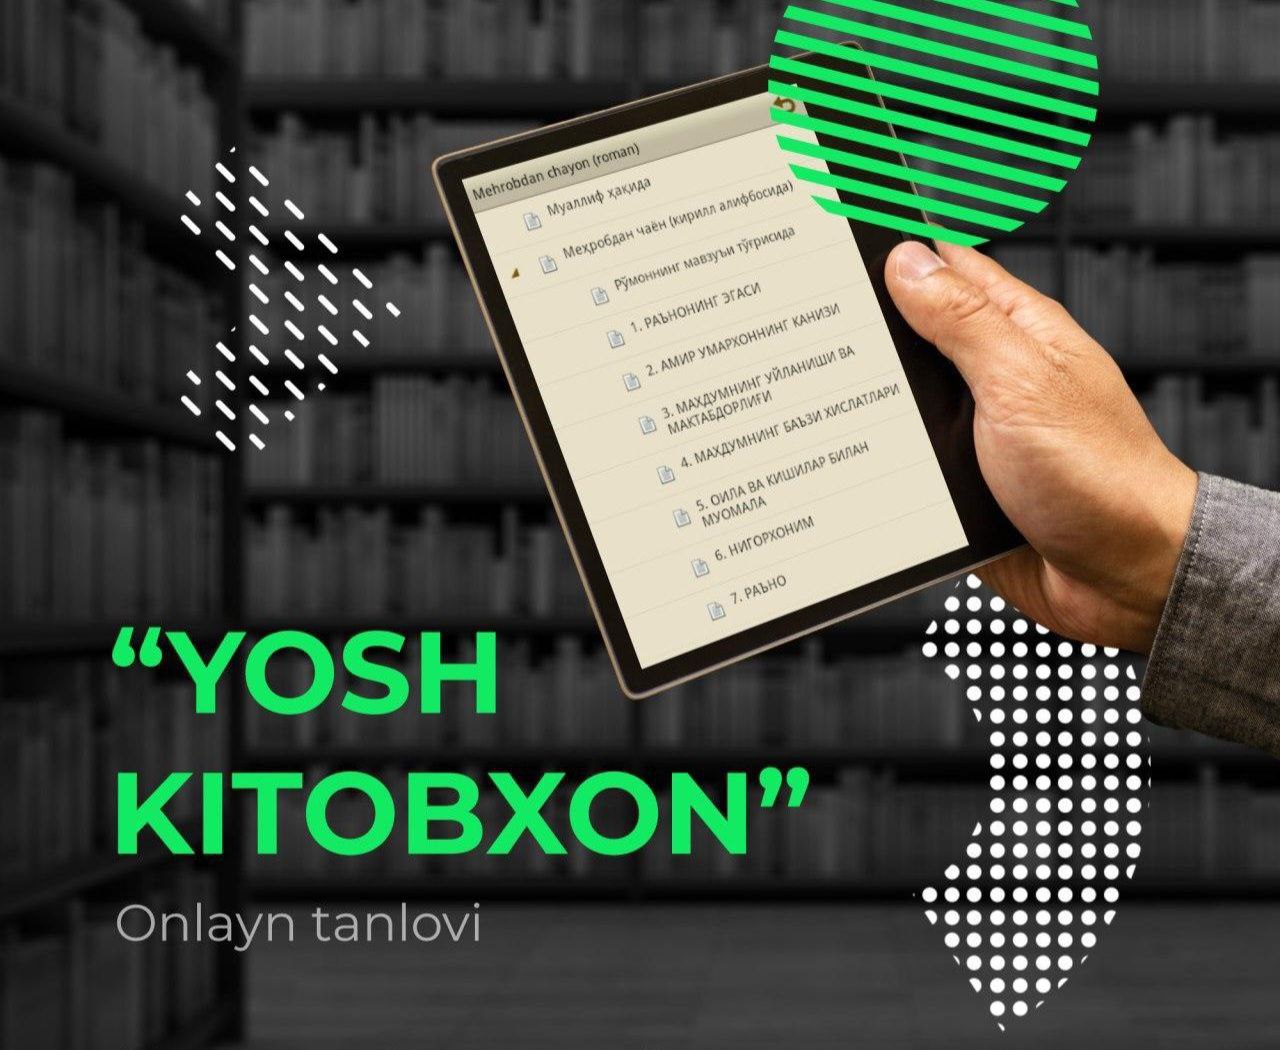 You are currently viewing “Kitobxon yoshlar” onlayn Respublika tanlovi￼